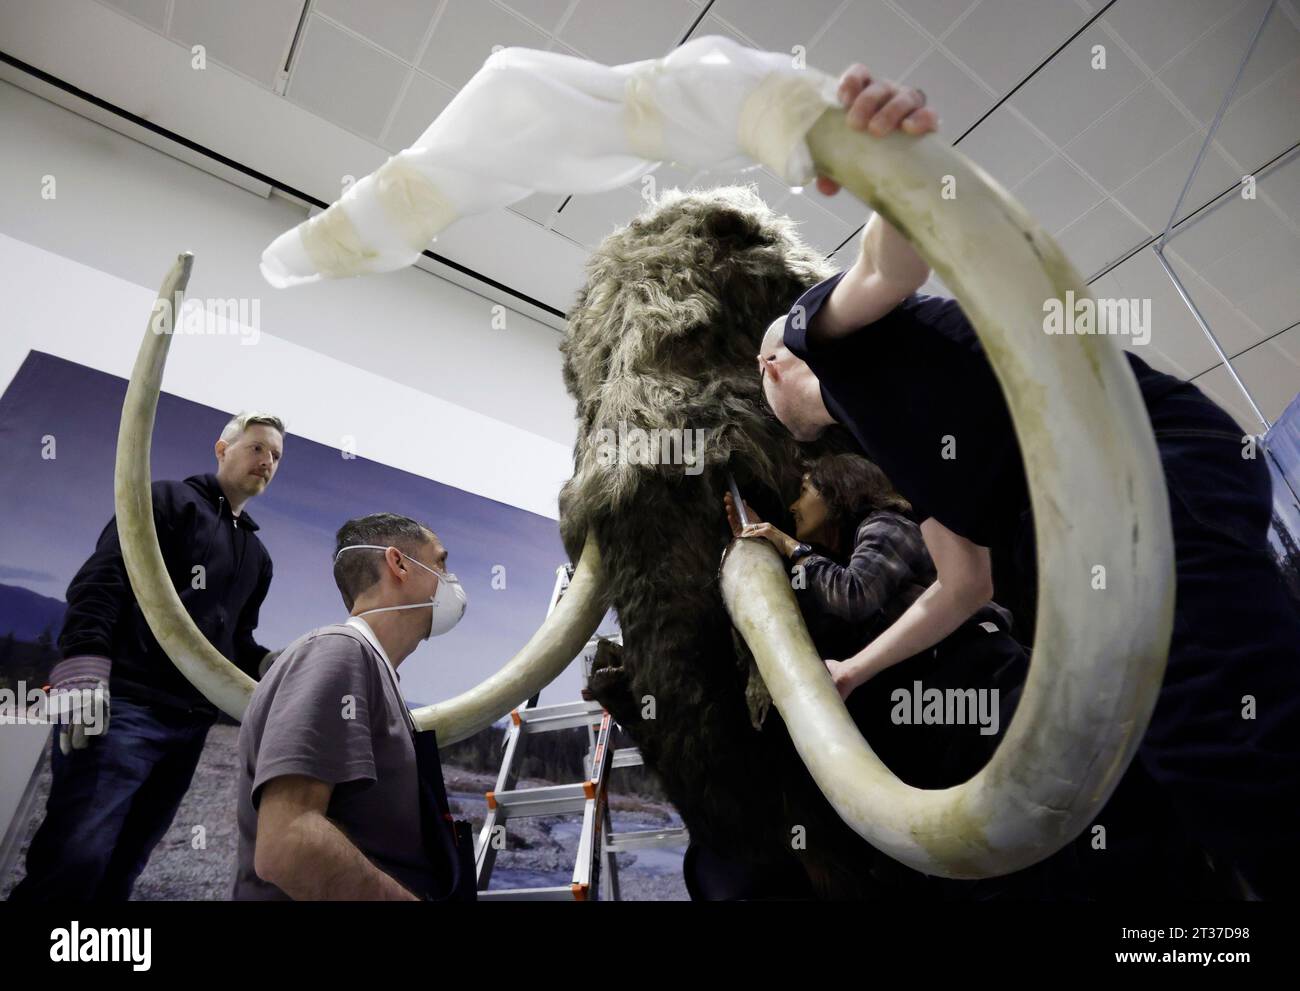 New York, Stati Uniti. 3 gennaio 2023. I lavoratori assemblano la testa, le zanne e altri ultimi aggiustamenti mentre completano l'installazione di un modello a grandezza naturale di un mammut lanoso, uno dei giganti dell'era glaciale, presso l'American Museum of Natural History di New York City lunedì 23 ottobre 2023. Il Mammoth lanoso a grandezza naturale arriva a New York come parte della nuova mostra, The Secret World of Elephants, che aprirà il 13 novembre. Foto di John Angelillo/UPI Credit: UPI/Alamy Live News Foto Stock